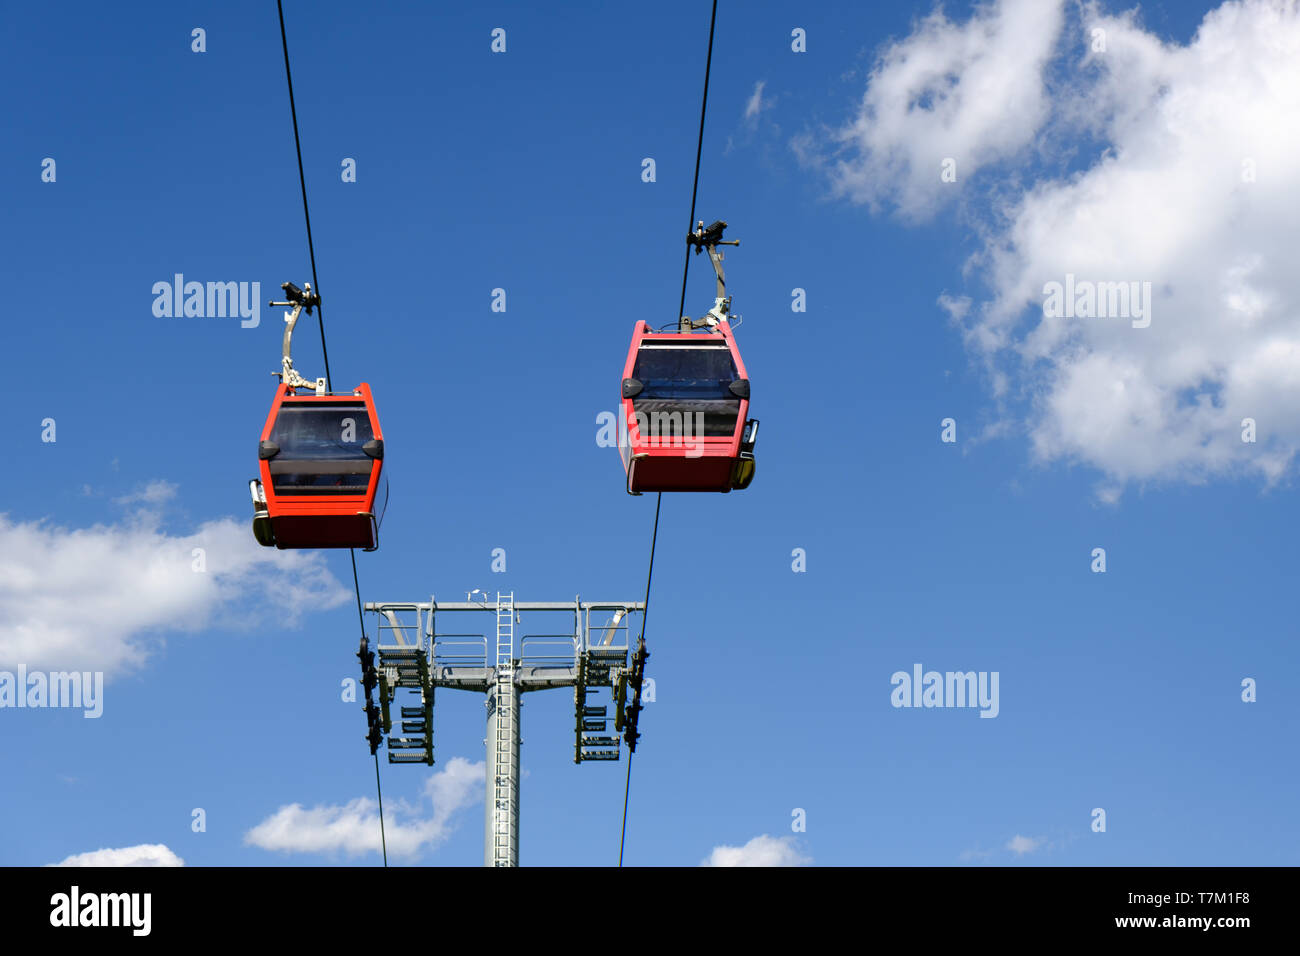 Zwei Seilbahnen in Luft agains ausgesetzt blauer Himmel mit weißen Wolken Puffy, Skilift, keine Personen Stockfoto